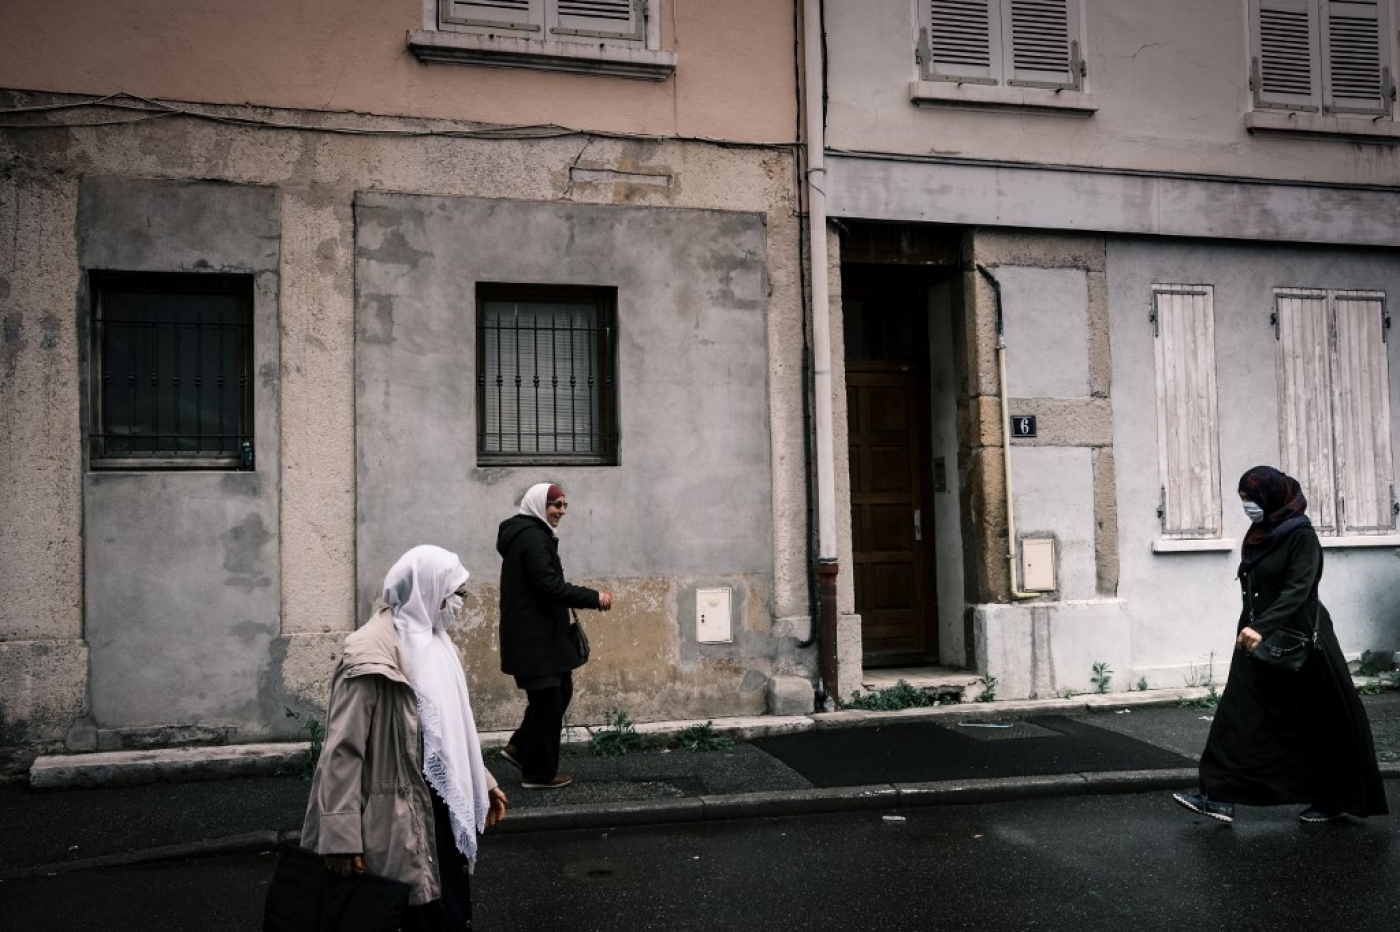 Le développement concomitant de la nébuleuse islamiste et de gangs de narcotrafiquants dans la France périphérique doit surtout interpeller en raison des conséquences en matière de dépolitisation des populations vivant dans ces quartiers fragilisés (AFP)